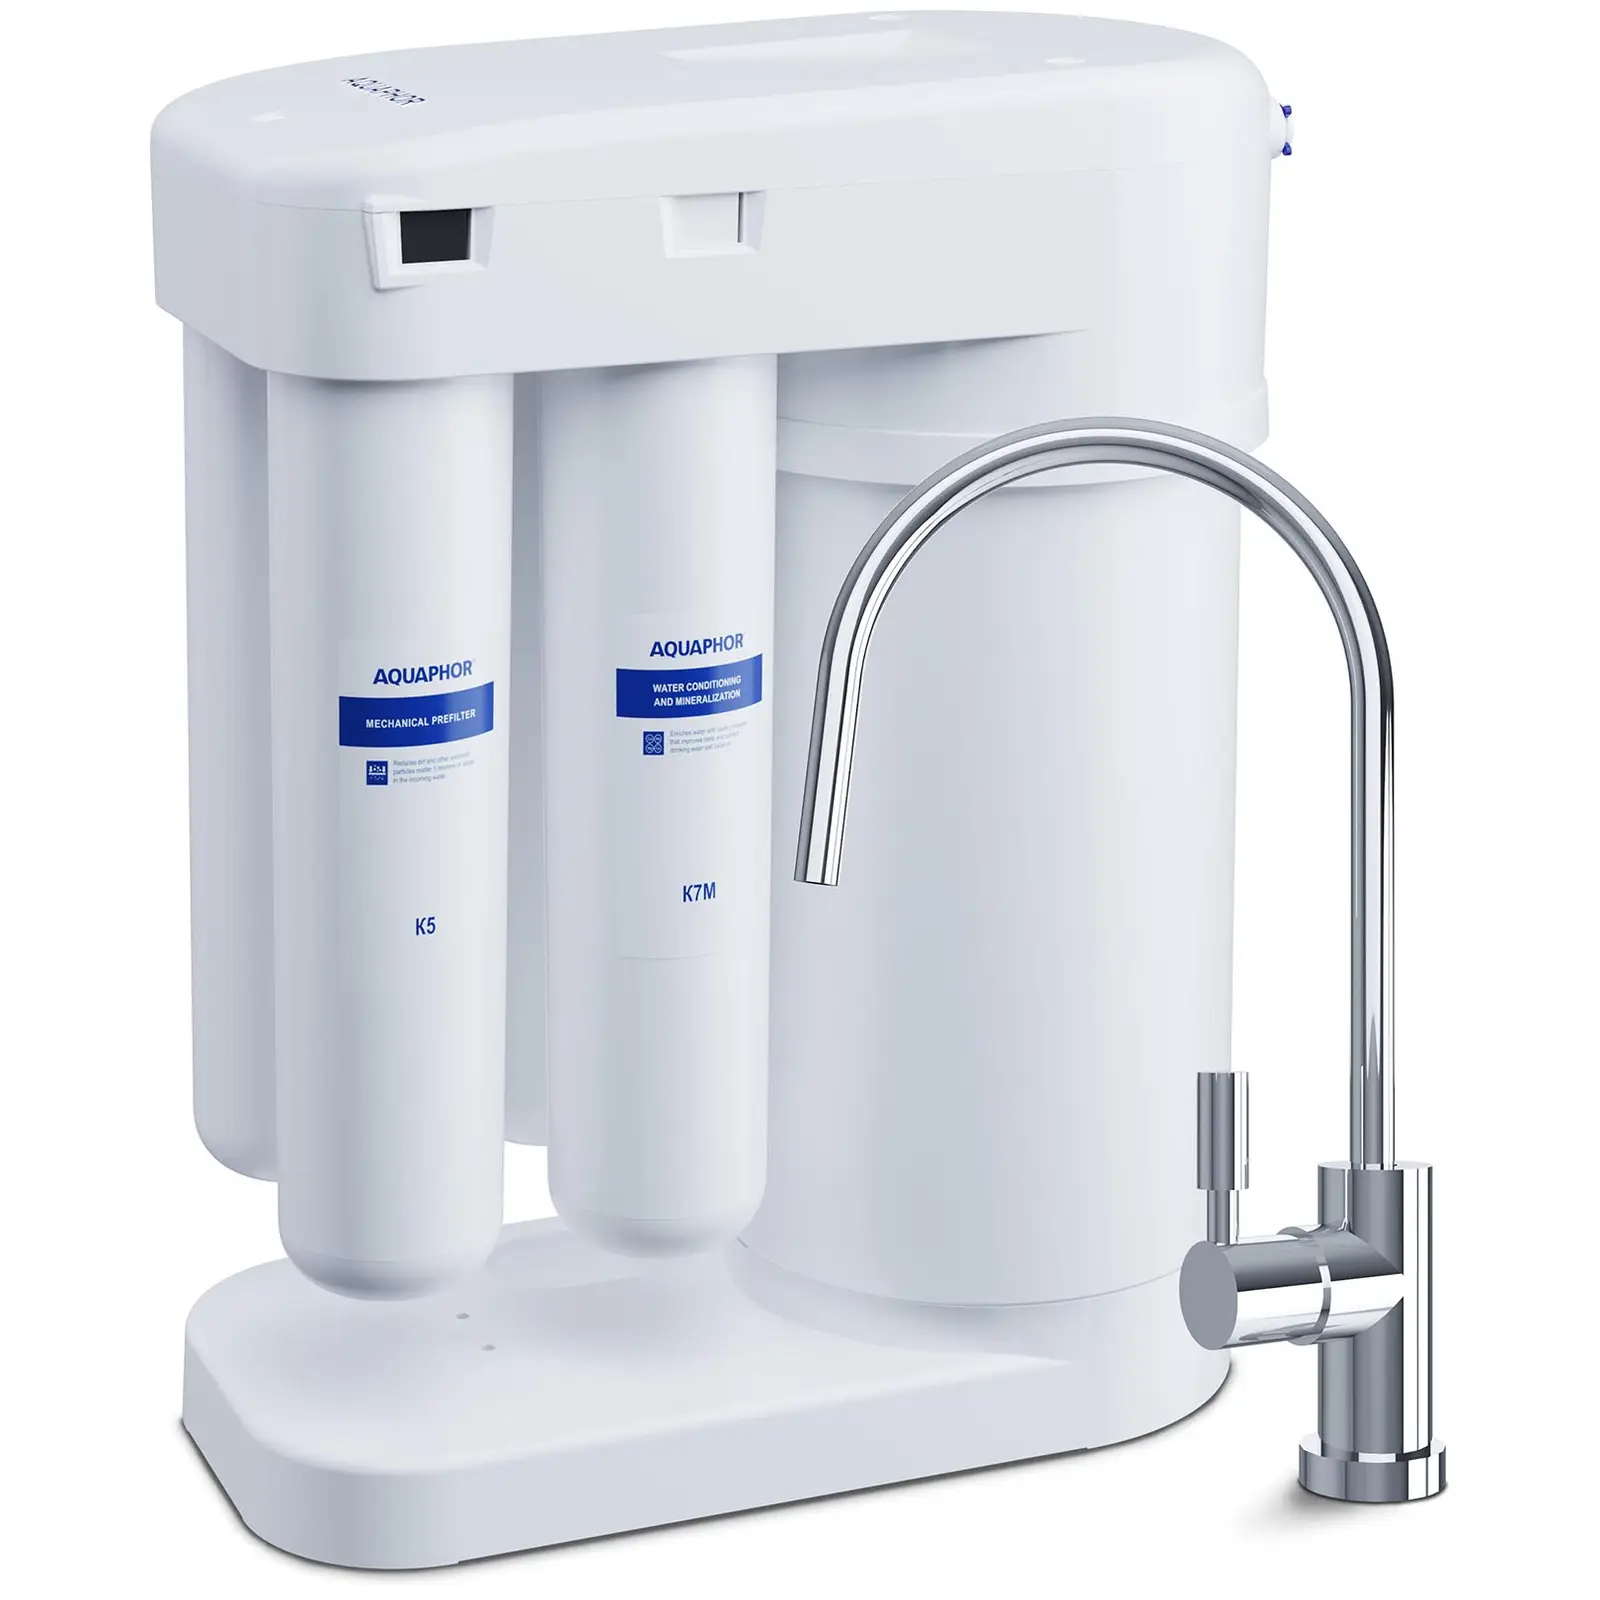 Aquaphor omvendt osmosesystem - 190 l/dagen - med tappekran